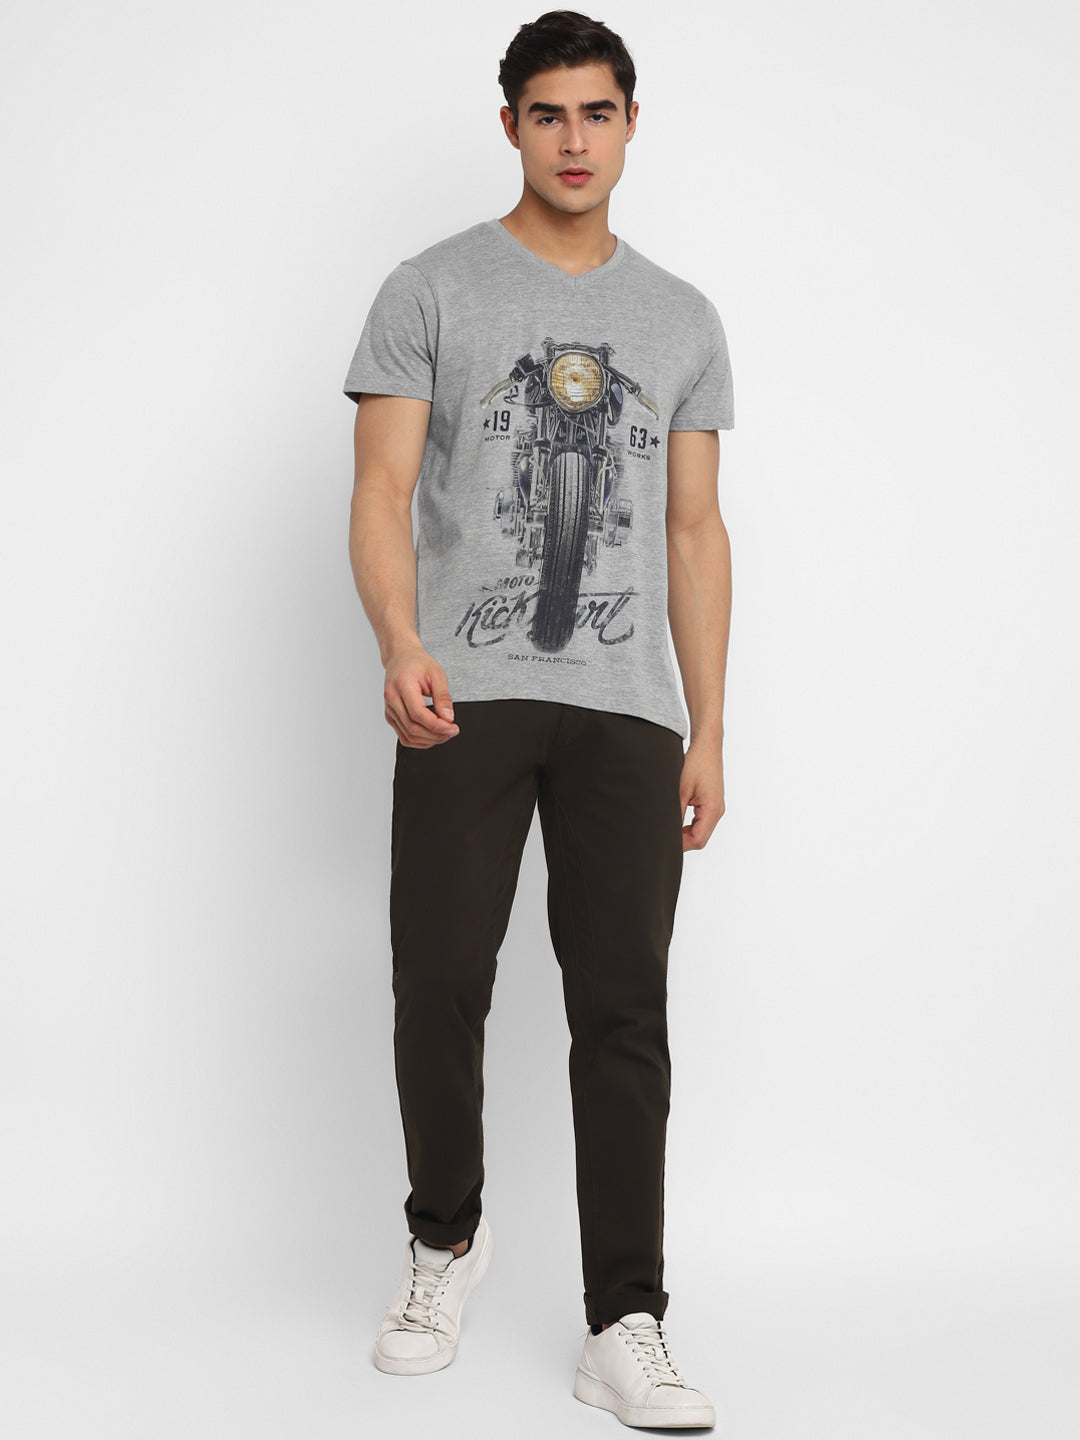 Printed V Neck T-Shirt For Men - Grey Melange